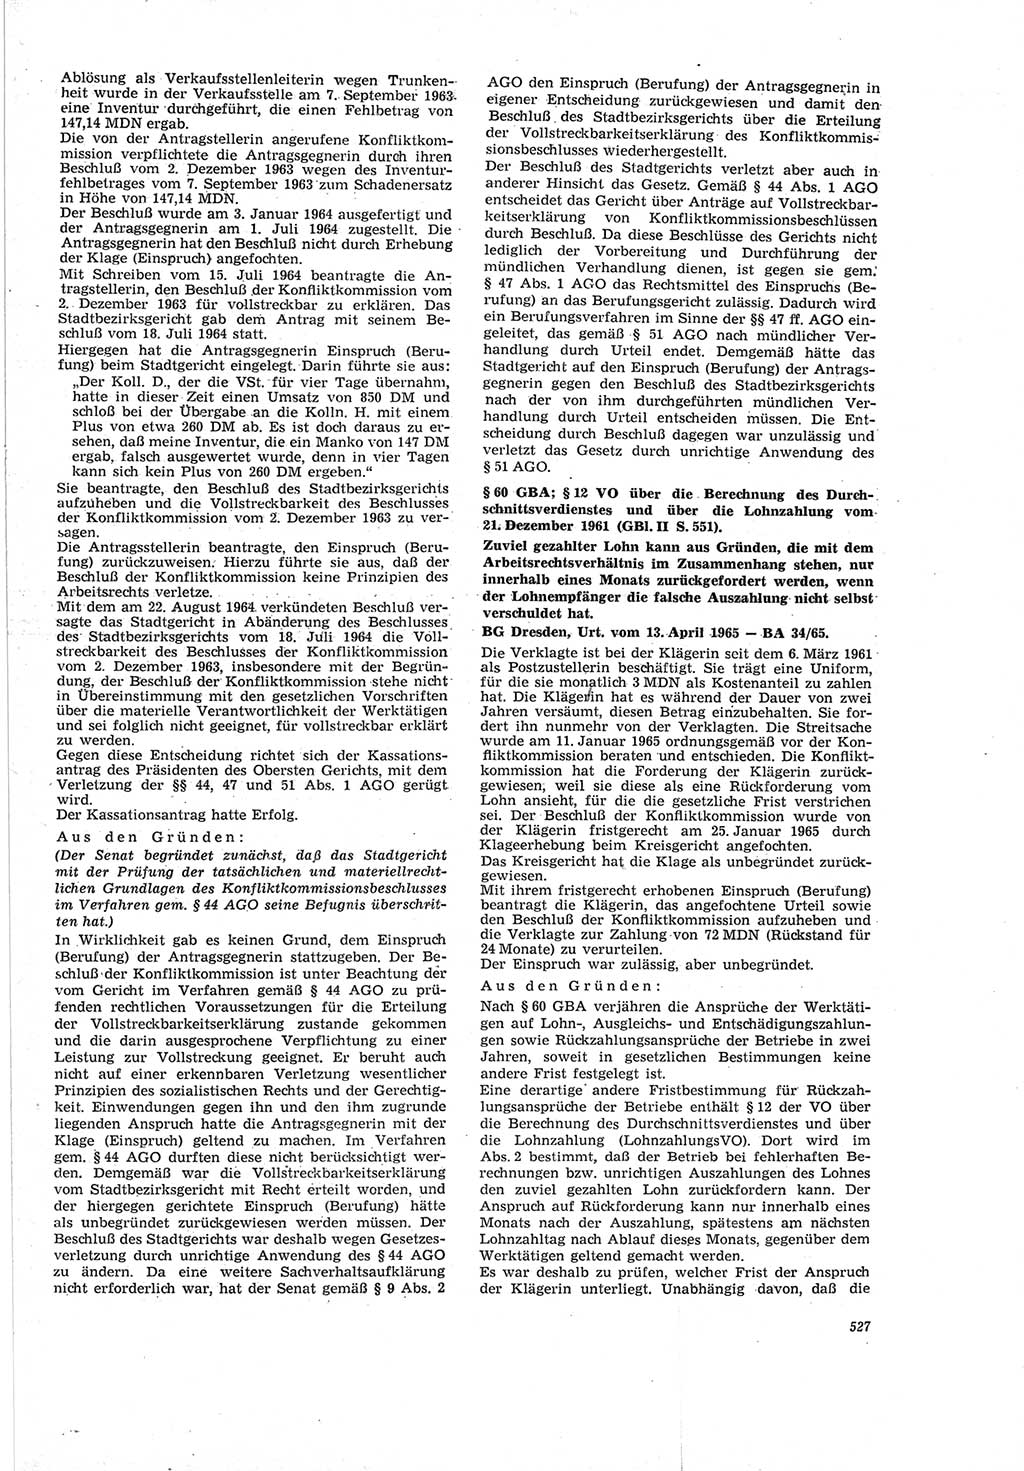 Neue Justiz (NJ), Zeitschrift für Recht und Rechtswissenschaft [Deutsche Demokratische Republik (DDR)], 19. Jahrgang 1965, Seite 527 (NJ DDR 1965, S. 527)